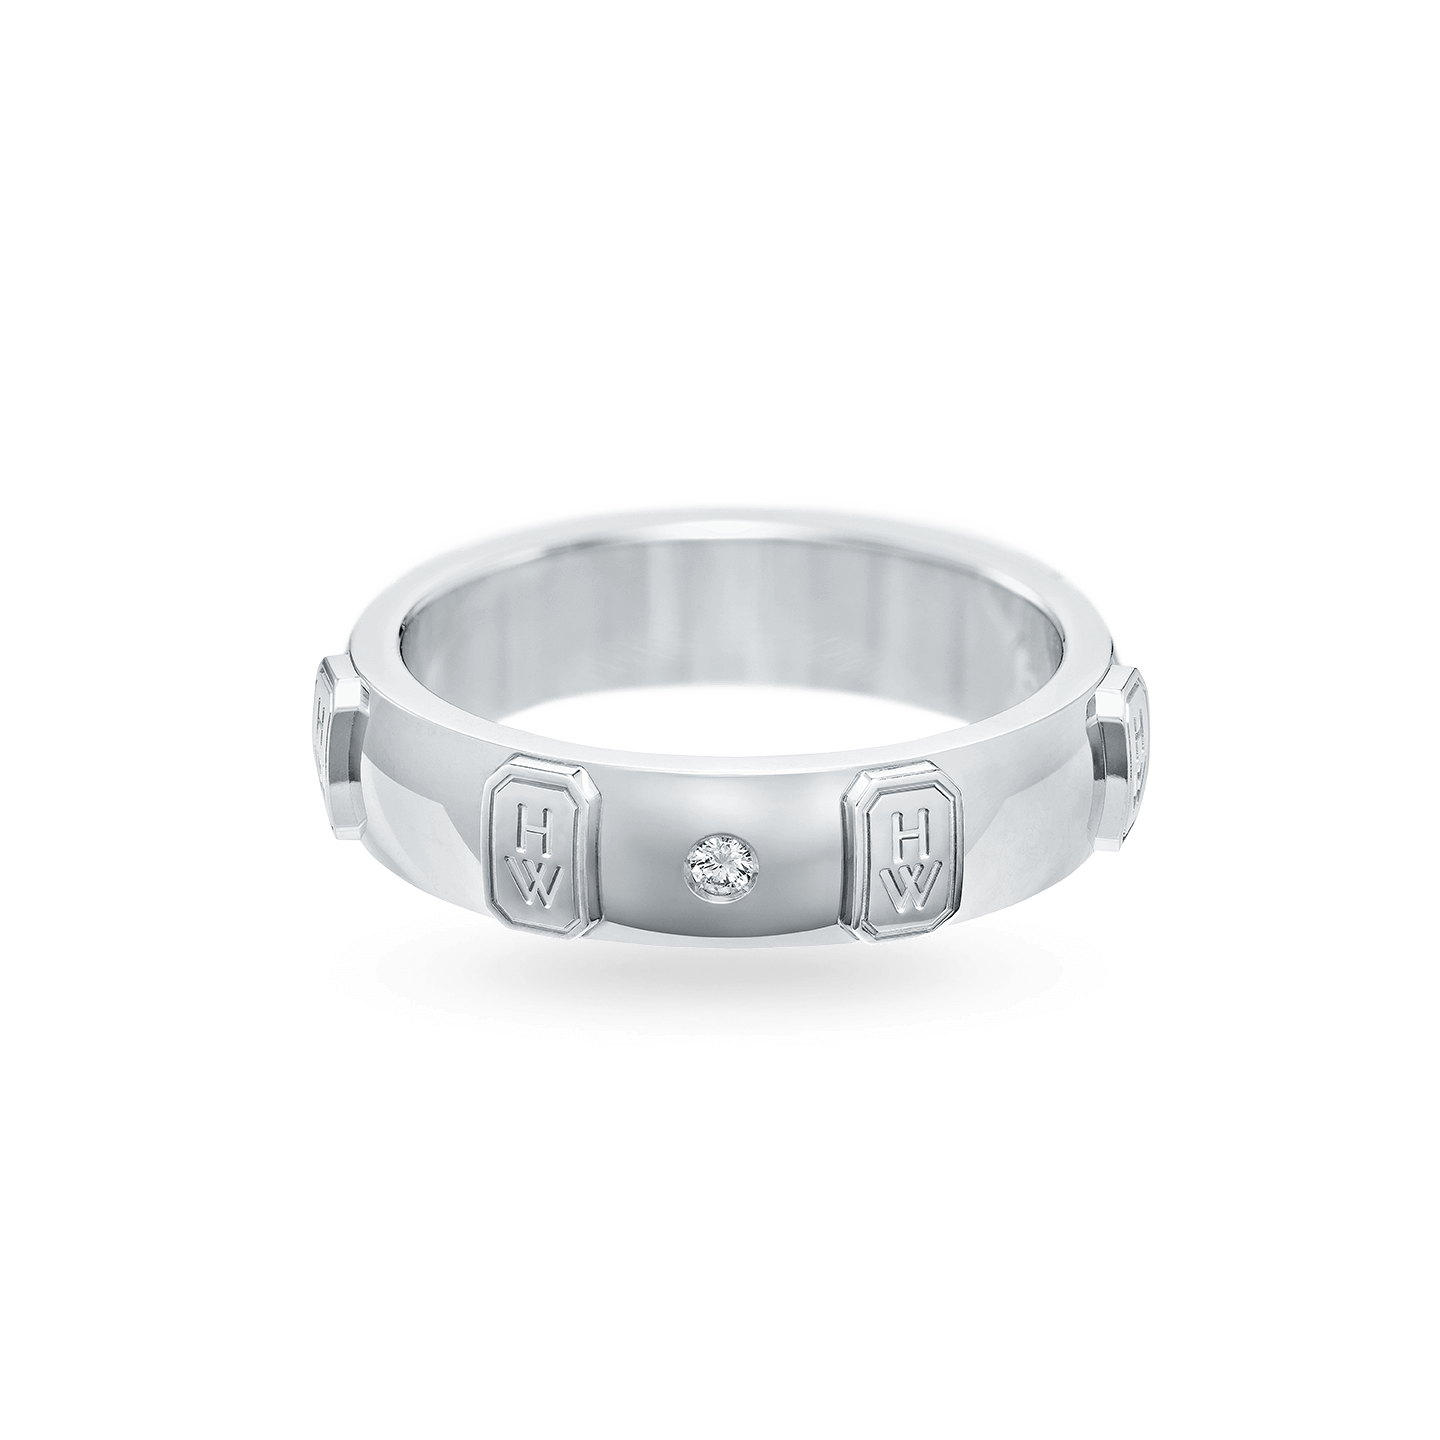 HW Logo White Gold Single Diamond Ring, Product Image 1